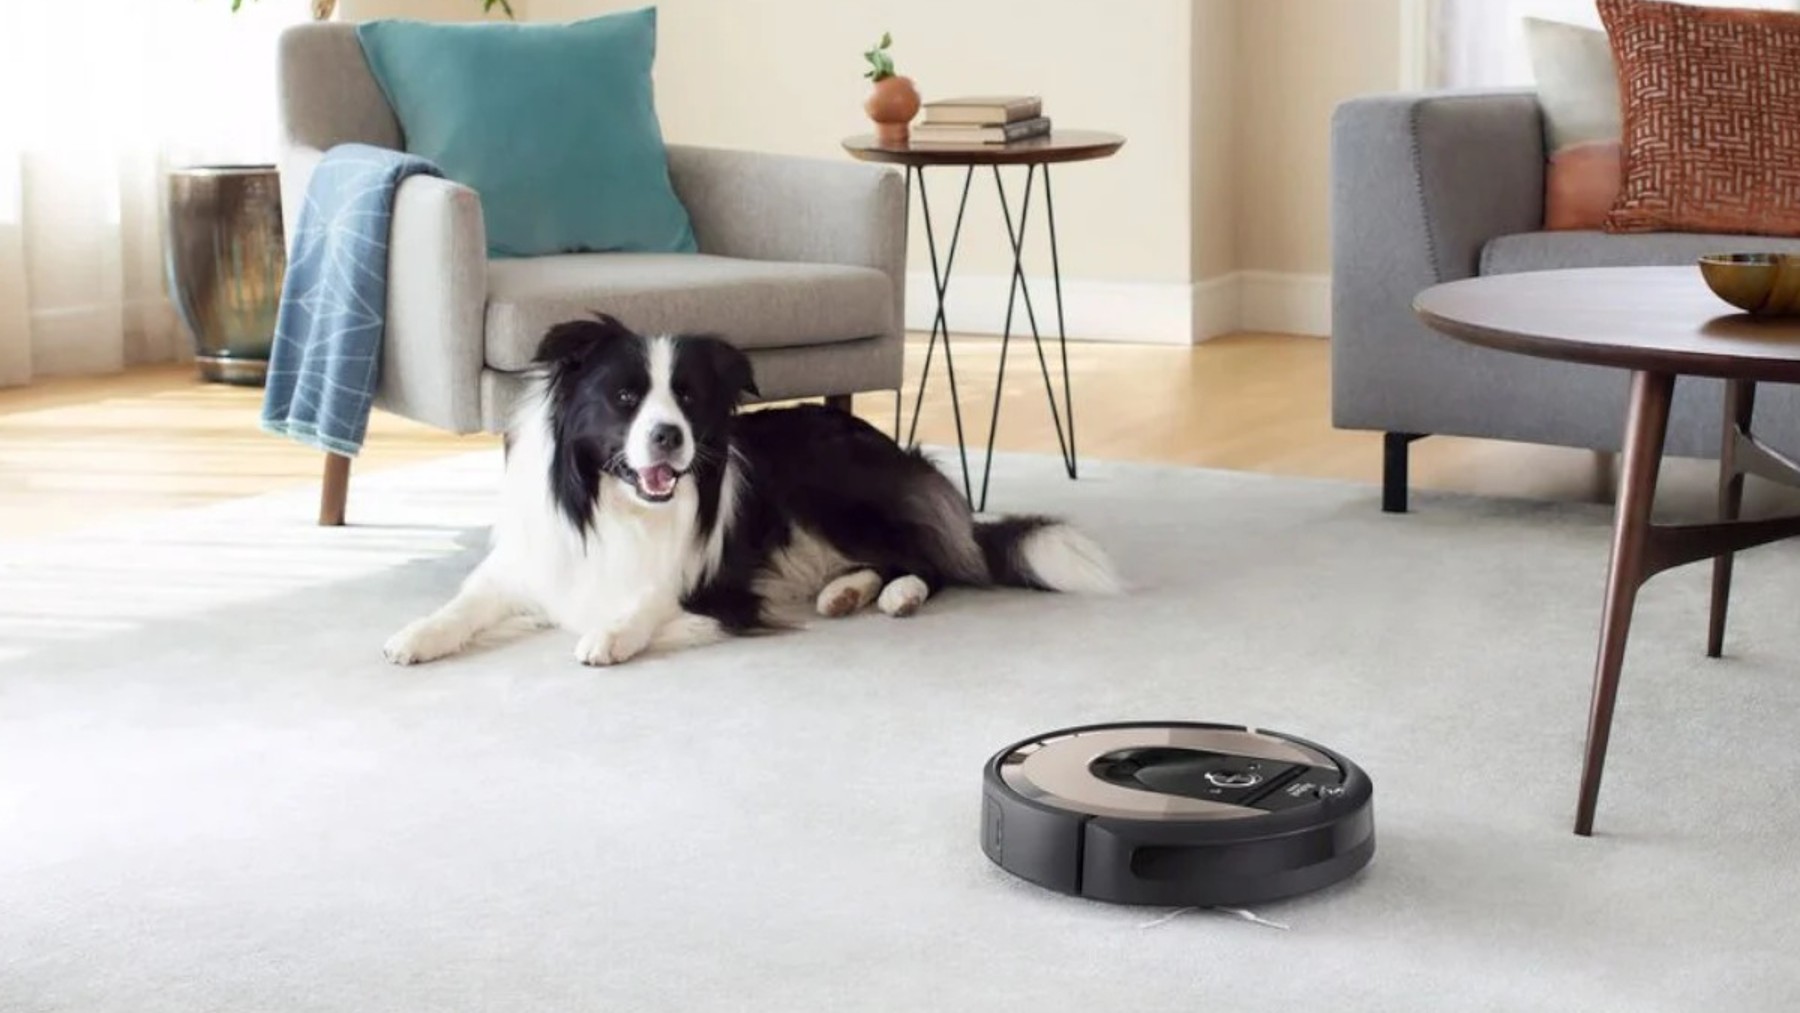 Qué chollo! Este robot aspirador Roomba está a mitad de precio